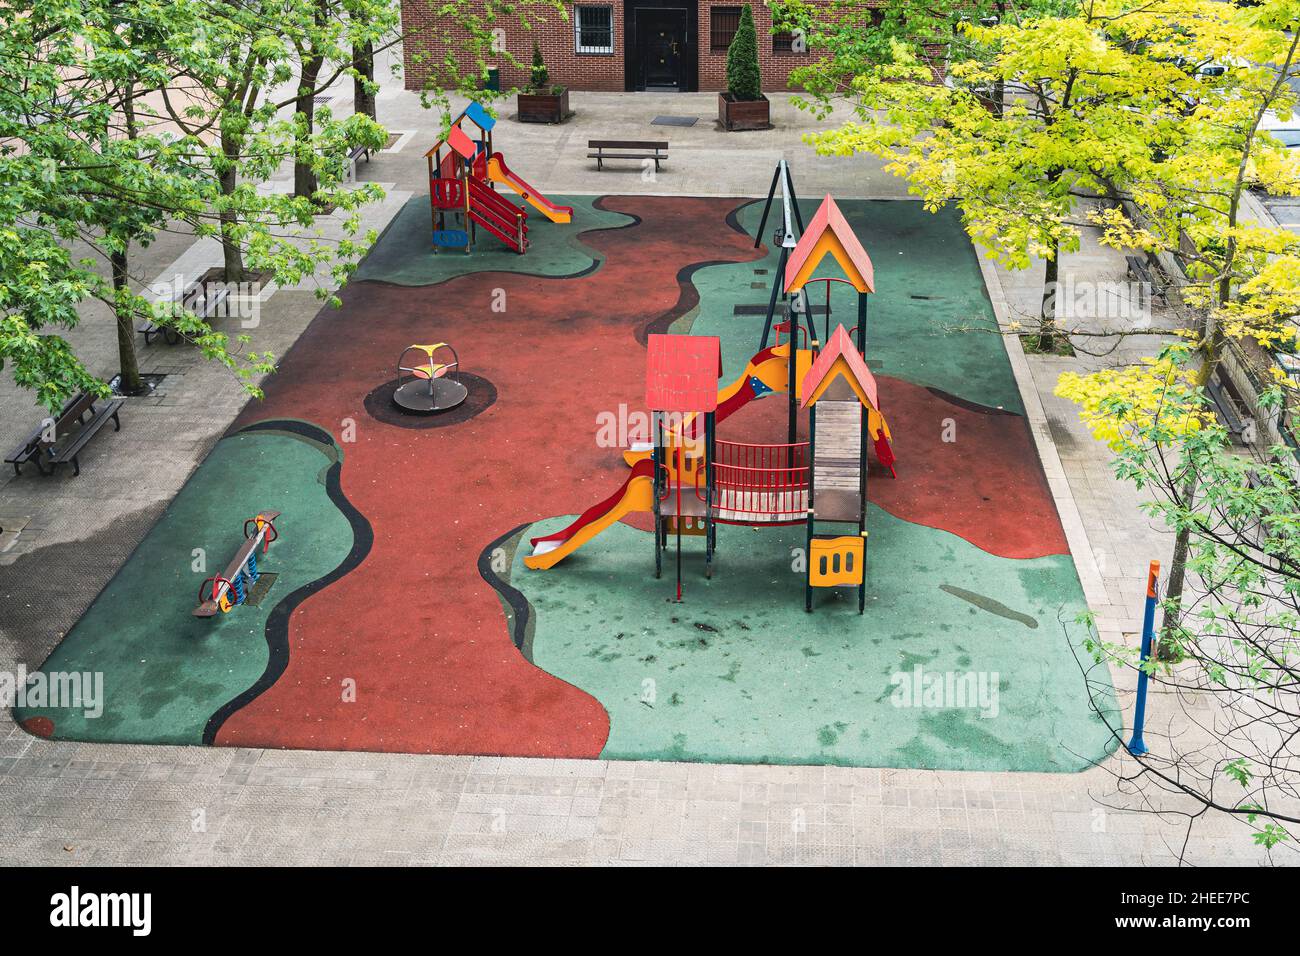 Aire de jeux vide pour les enfants avec balançoires et toboggans sur un sol rembourré flanqué d'arbres.La quarantaine pandémique, les concepts de personne à l'extérieur Banque D'Images